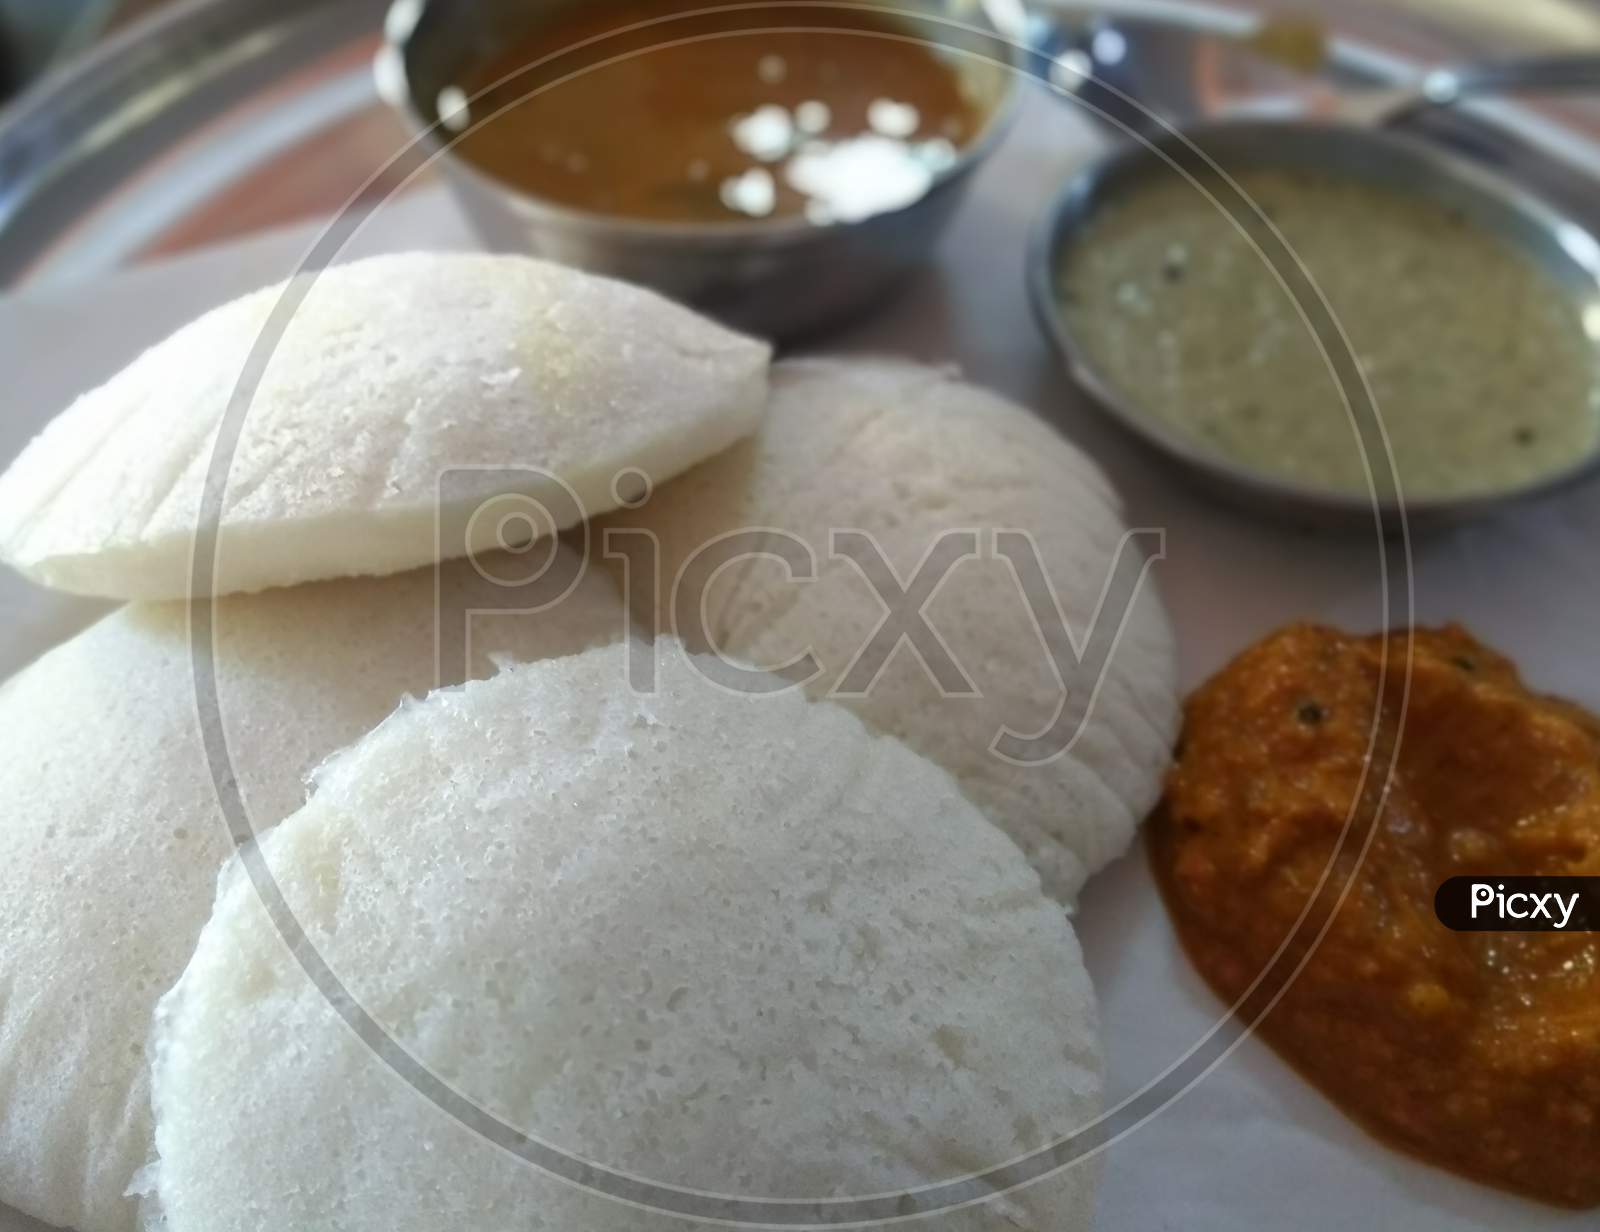 Idali with chutney and sambar